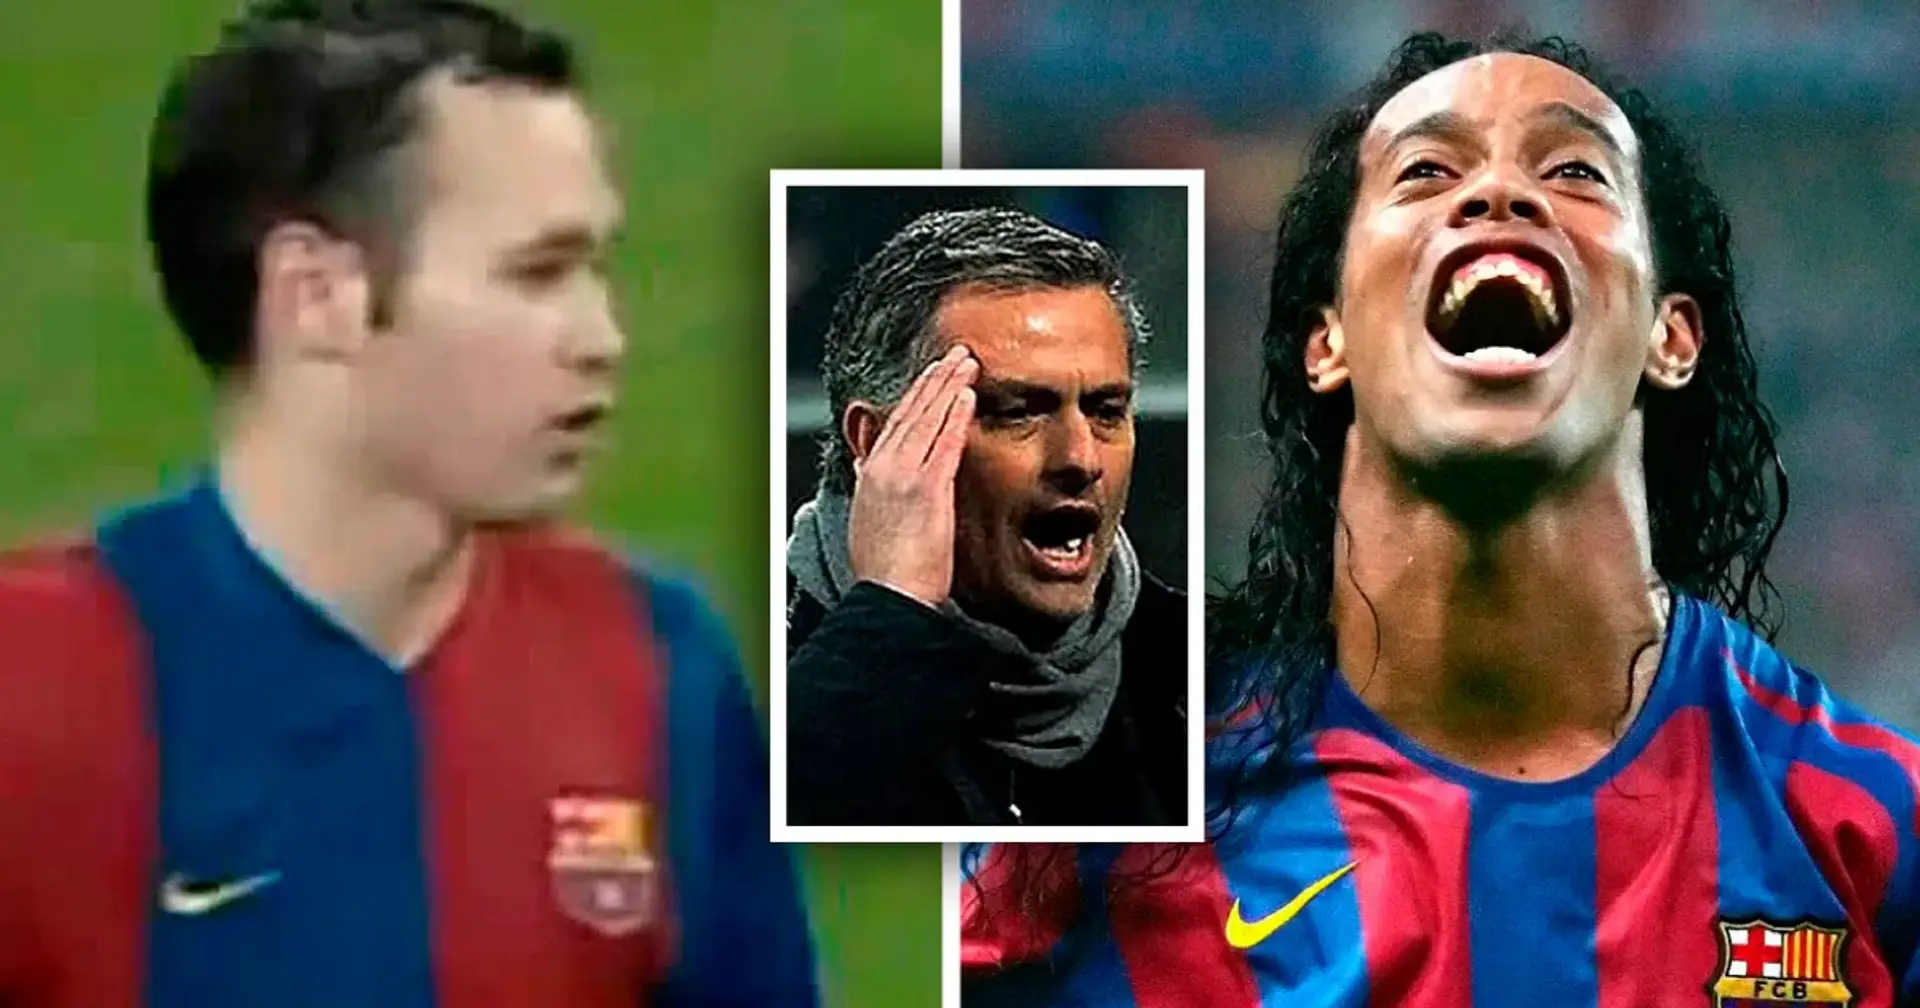 Ronaldinho 'ständiger Betrüger', Puyol 'wird durch Provokationen verrückt': Mourinhos geleakte Berichte über Barça-Spieler im Jahr 2006